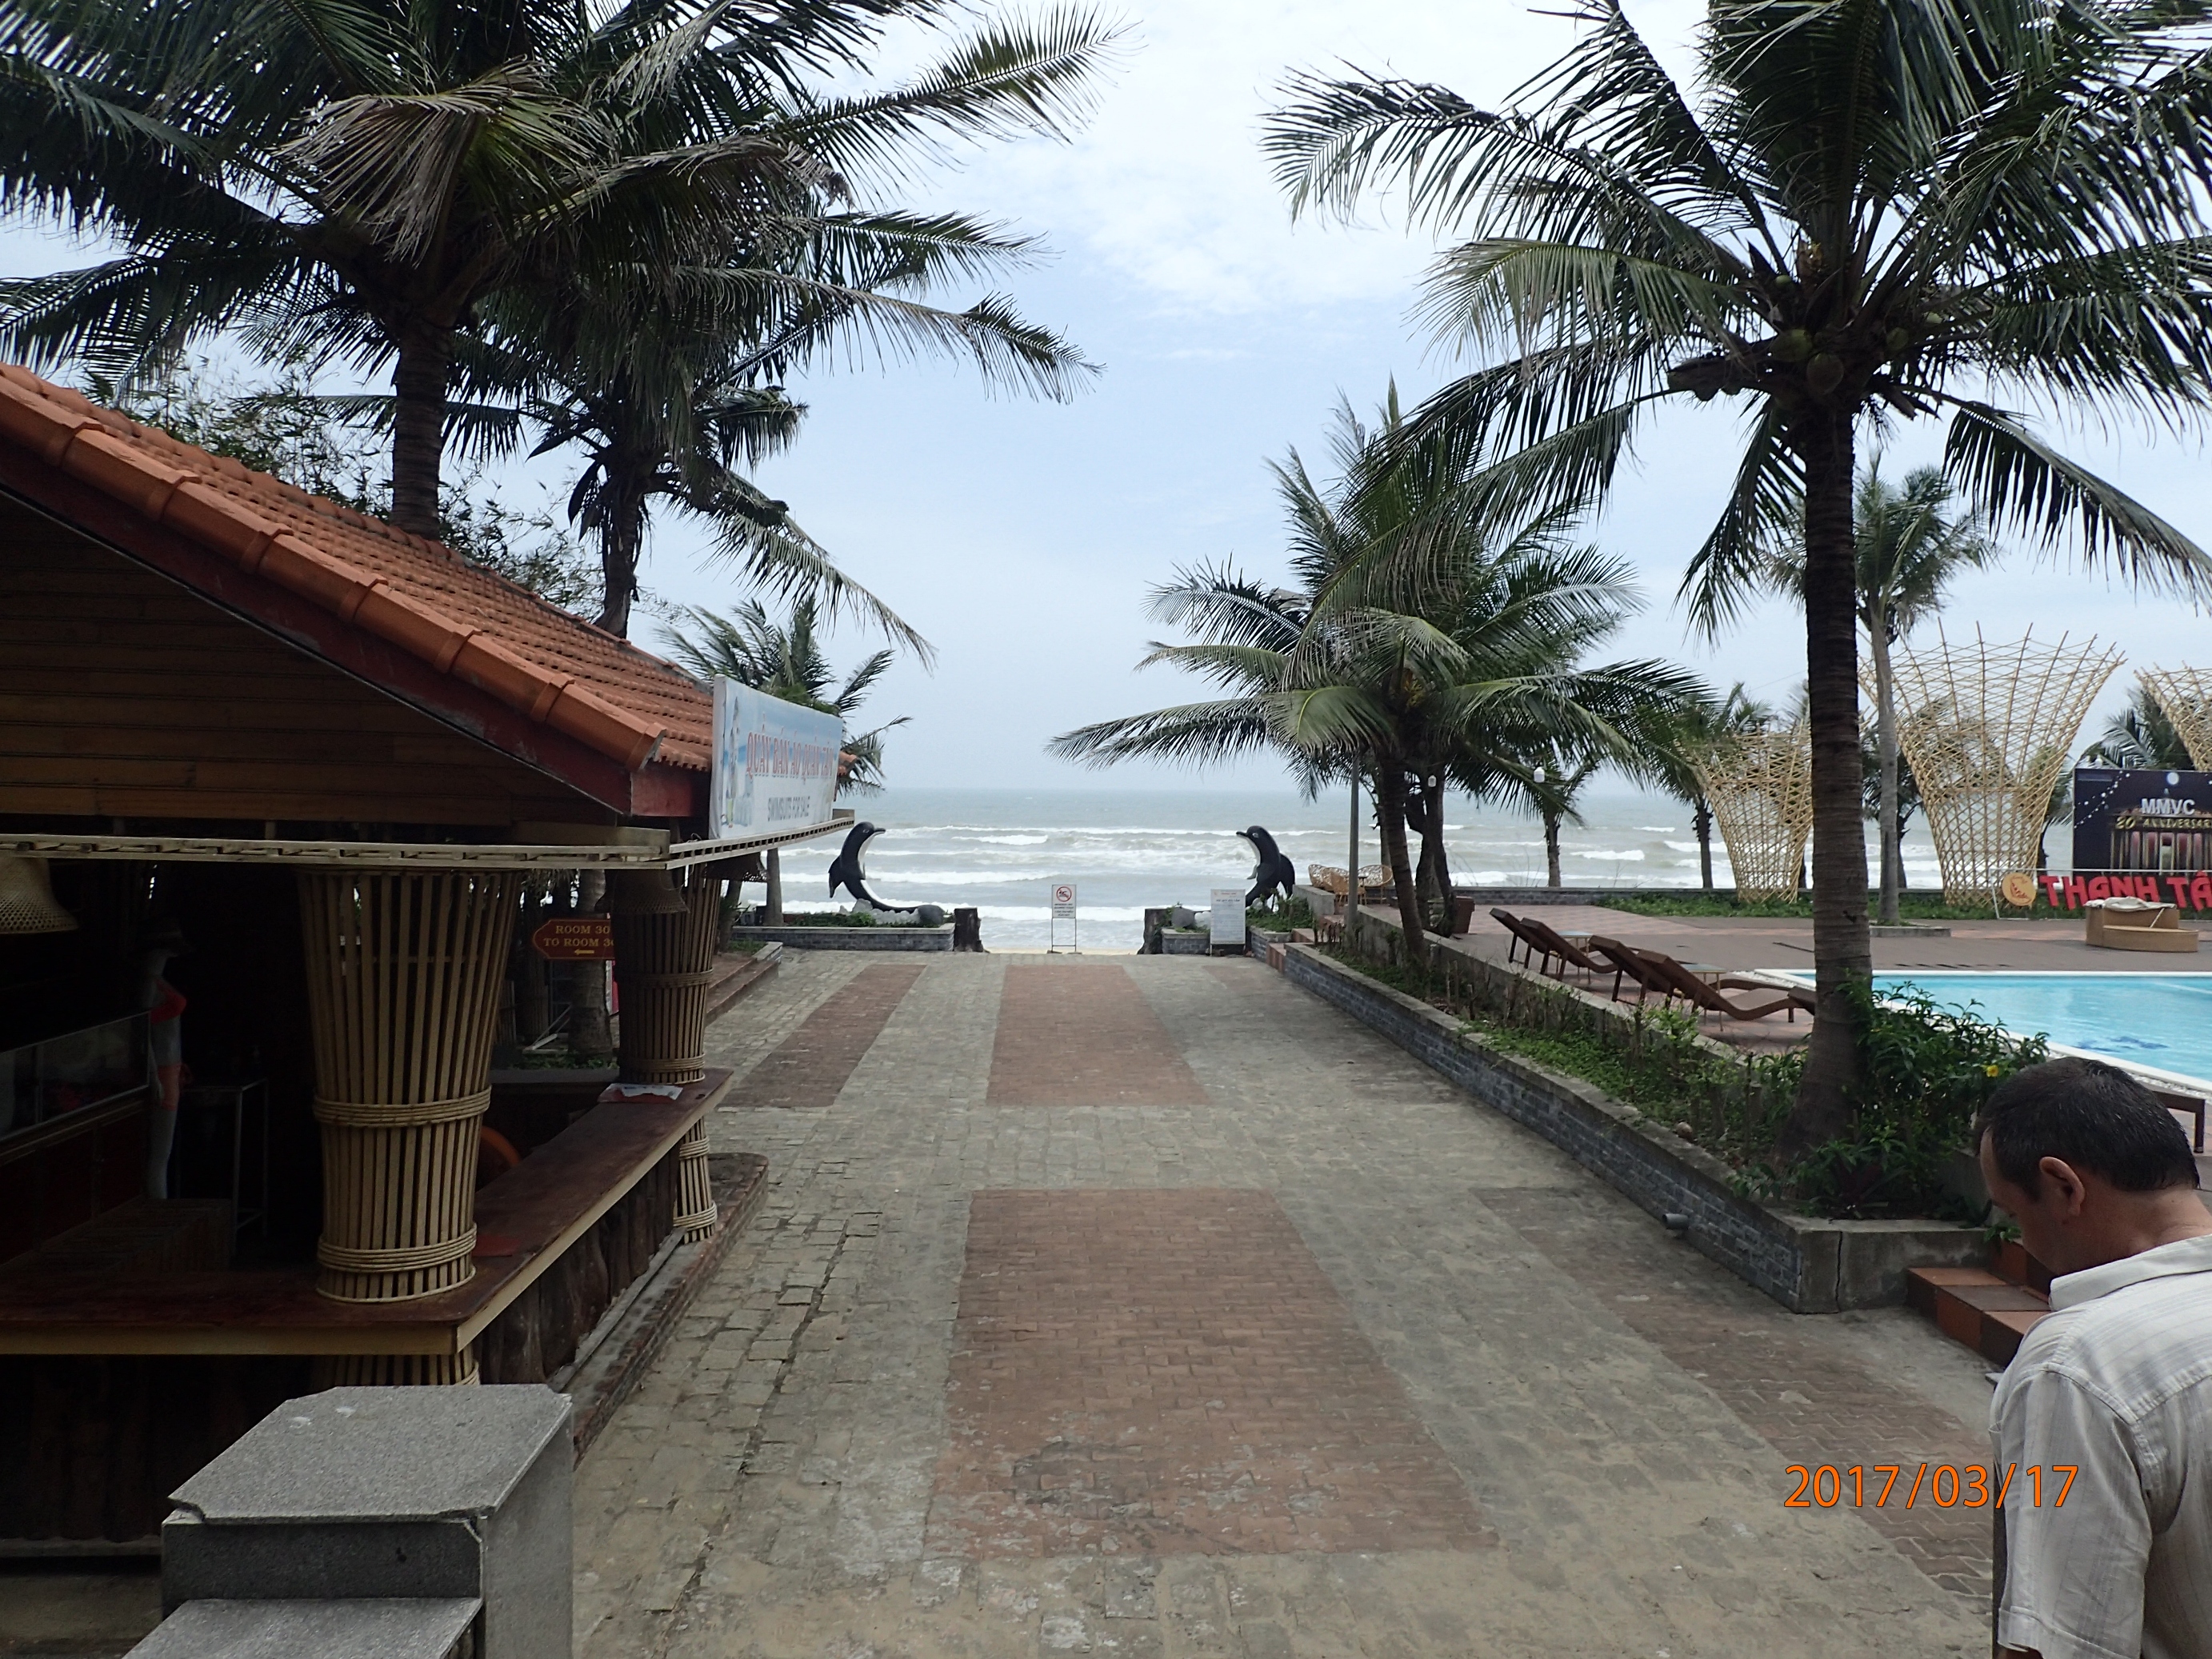 Kiváló tengerparti szállodák találhatóak a parton.